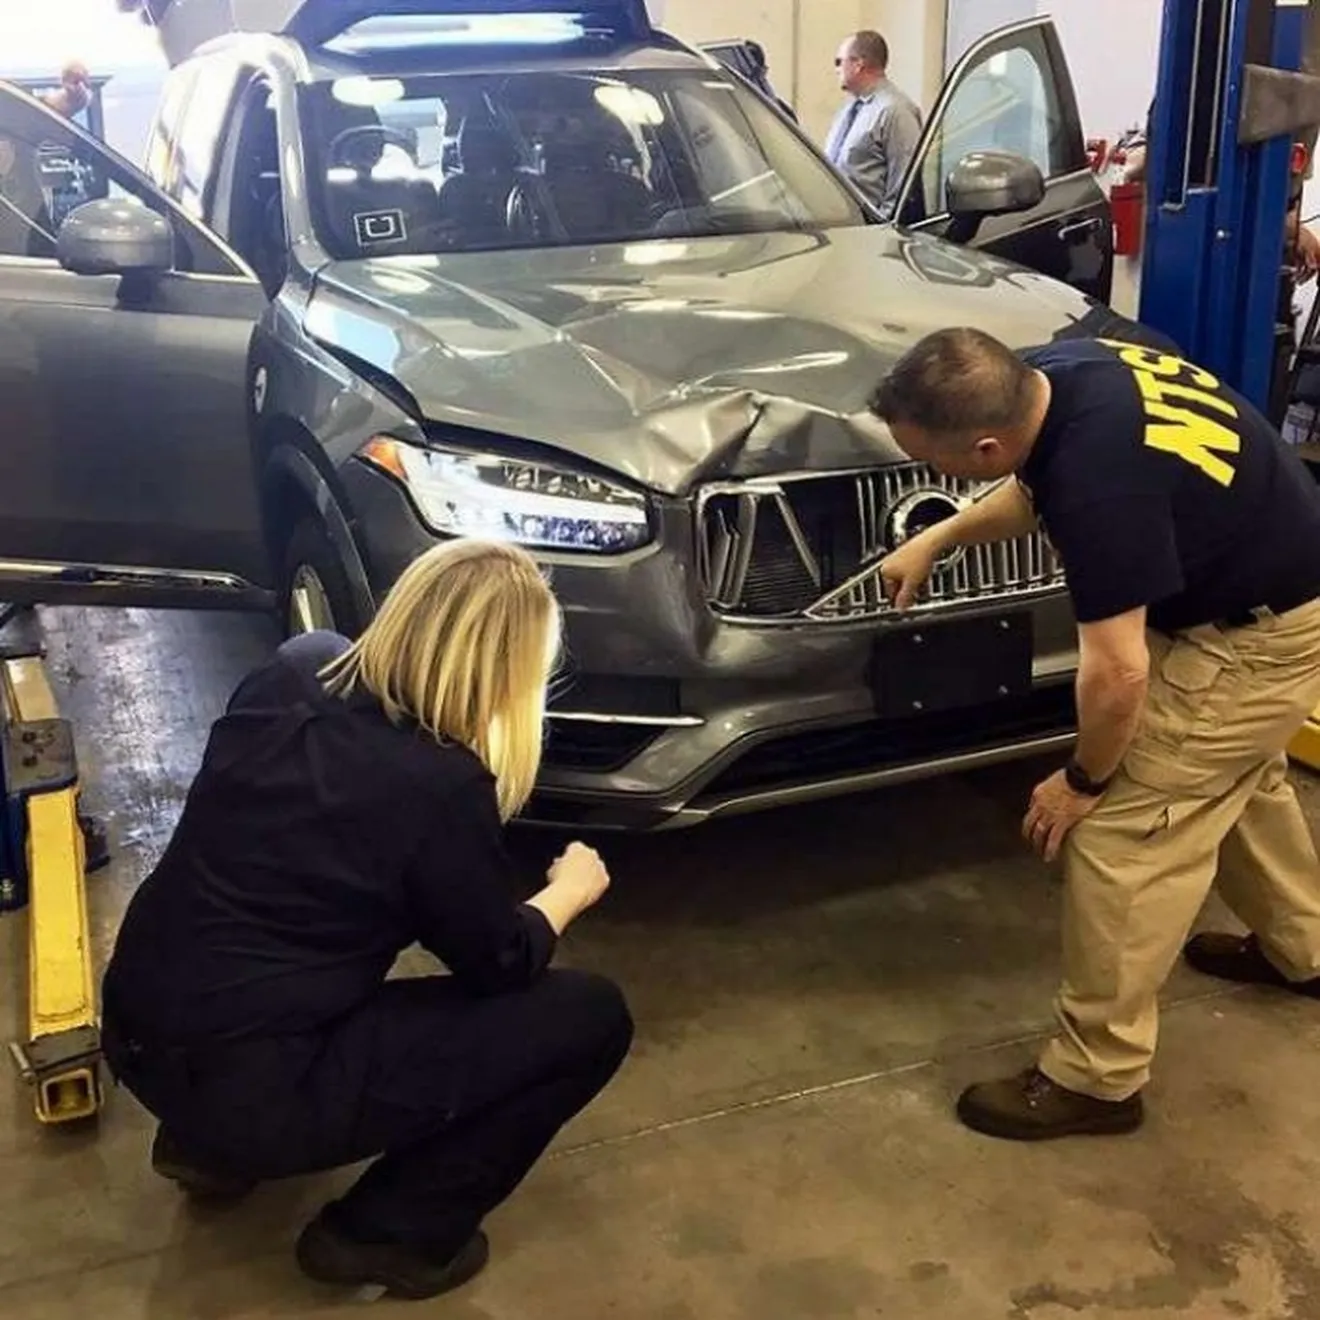 Lecciones sobre responsabilidad de coches autónomos tras el accidente mortal del Volvo XC90 autónomo de Uber